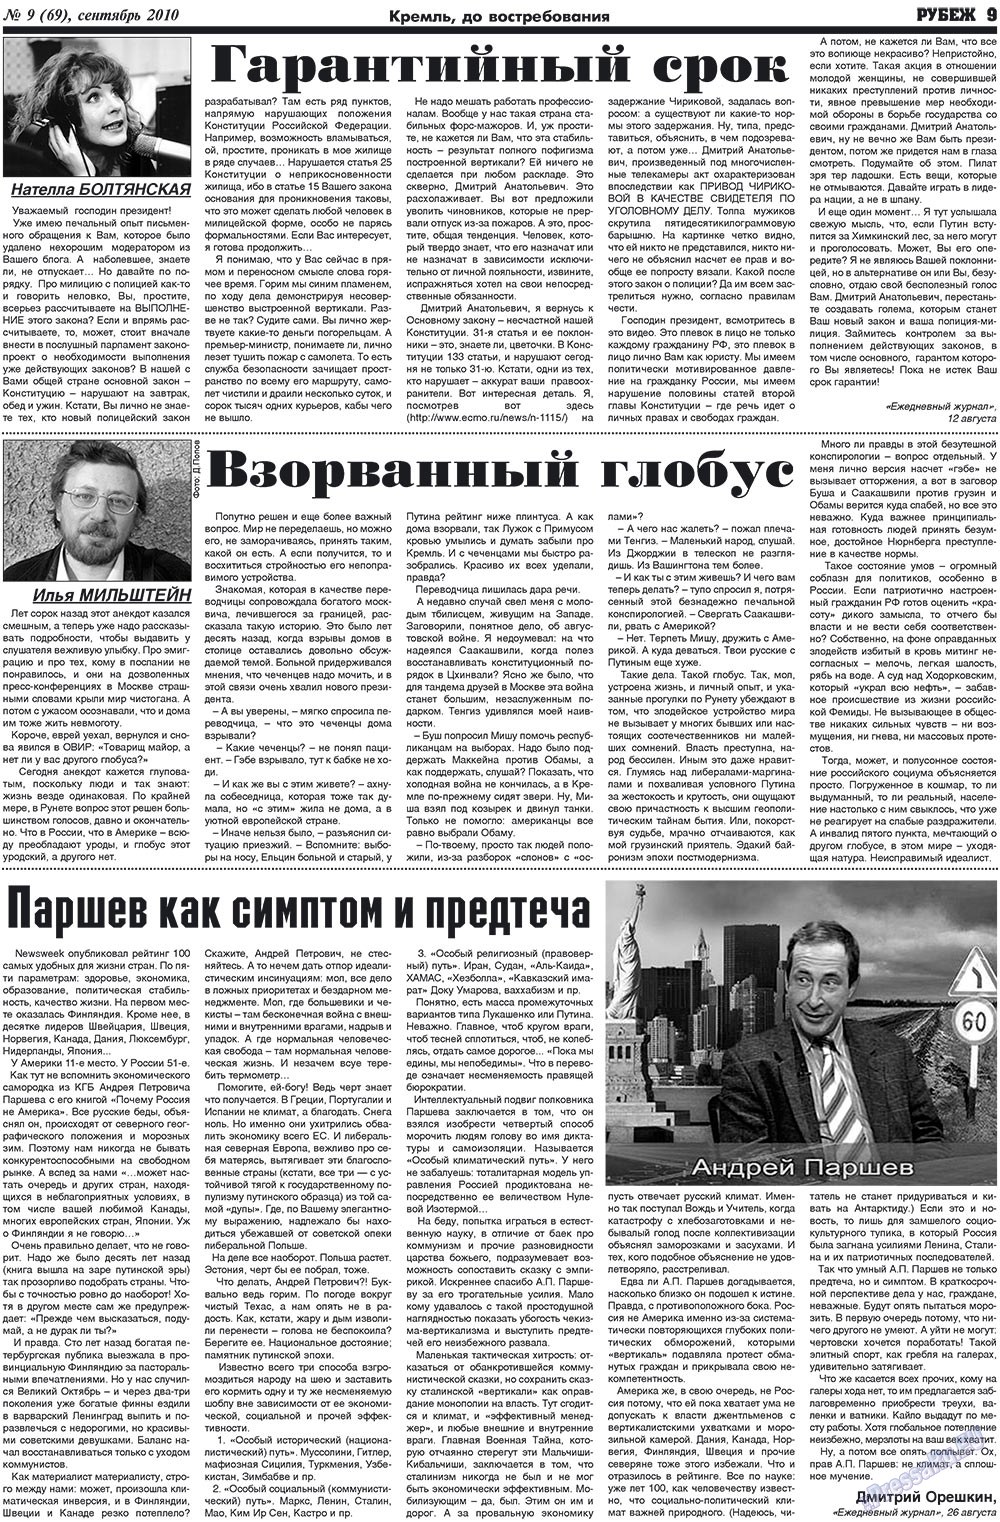 Рубеж (газета). 2010 год, номер 9, стр. 9